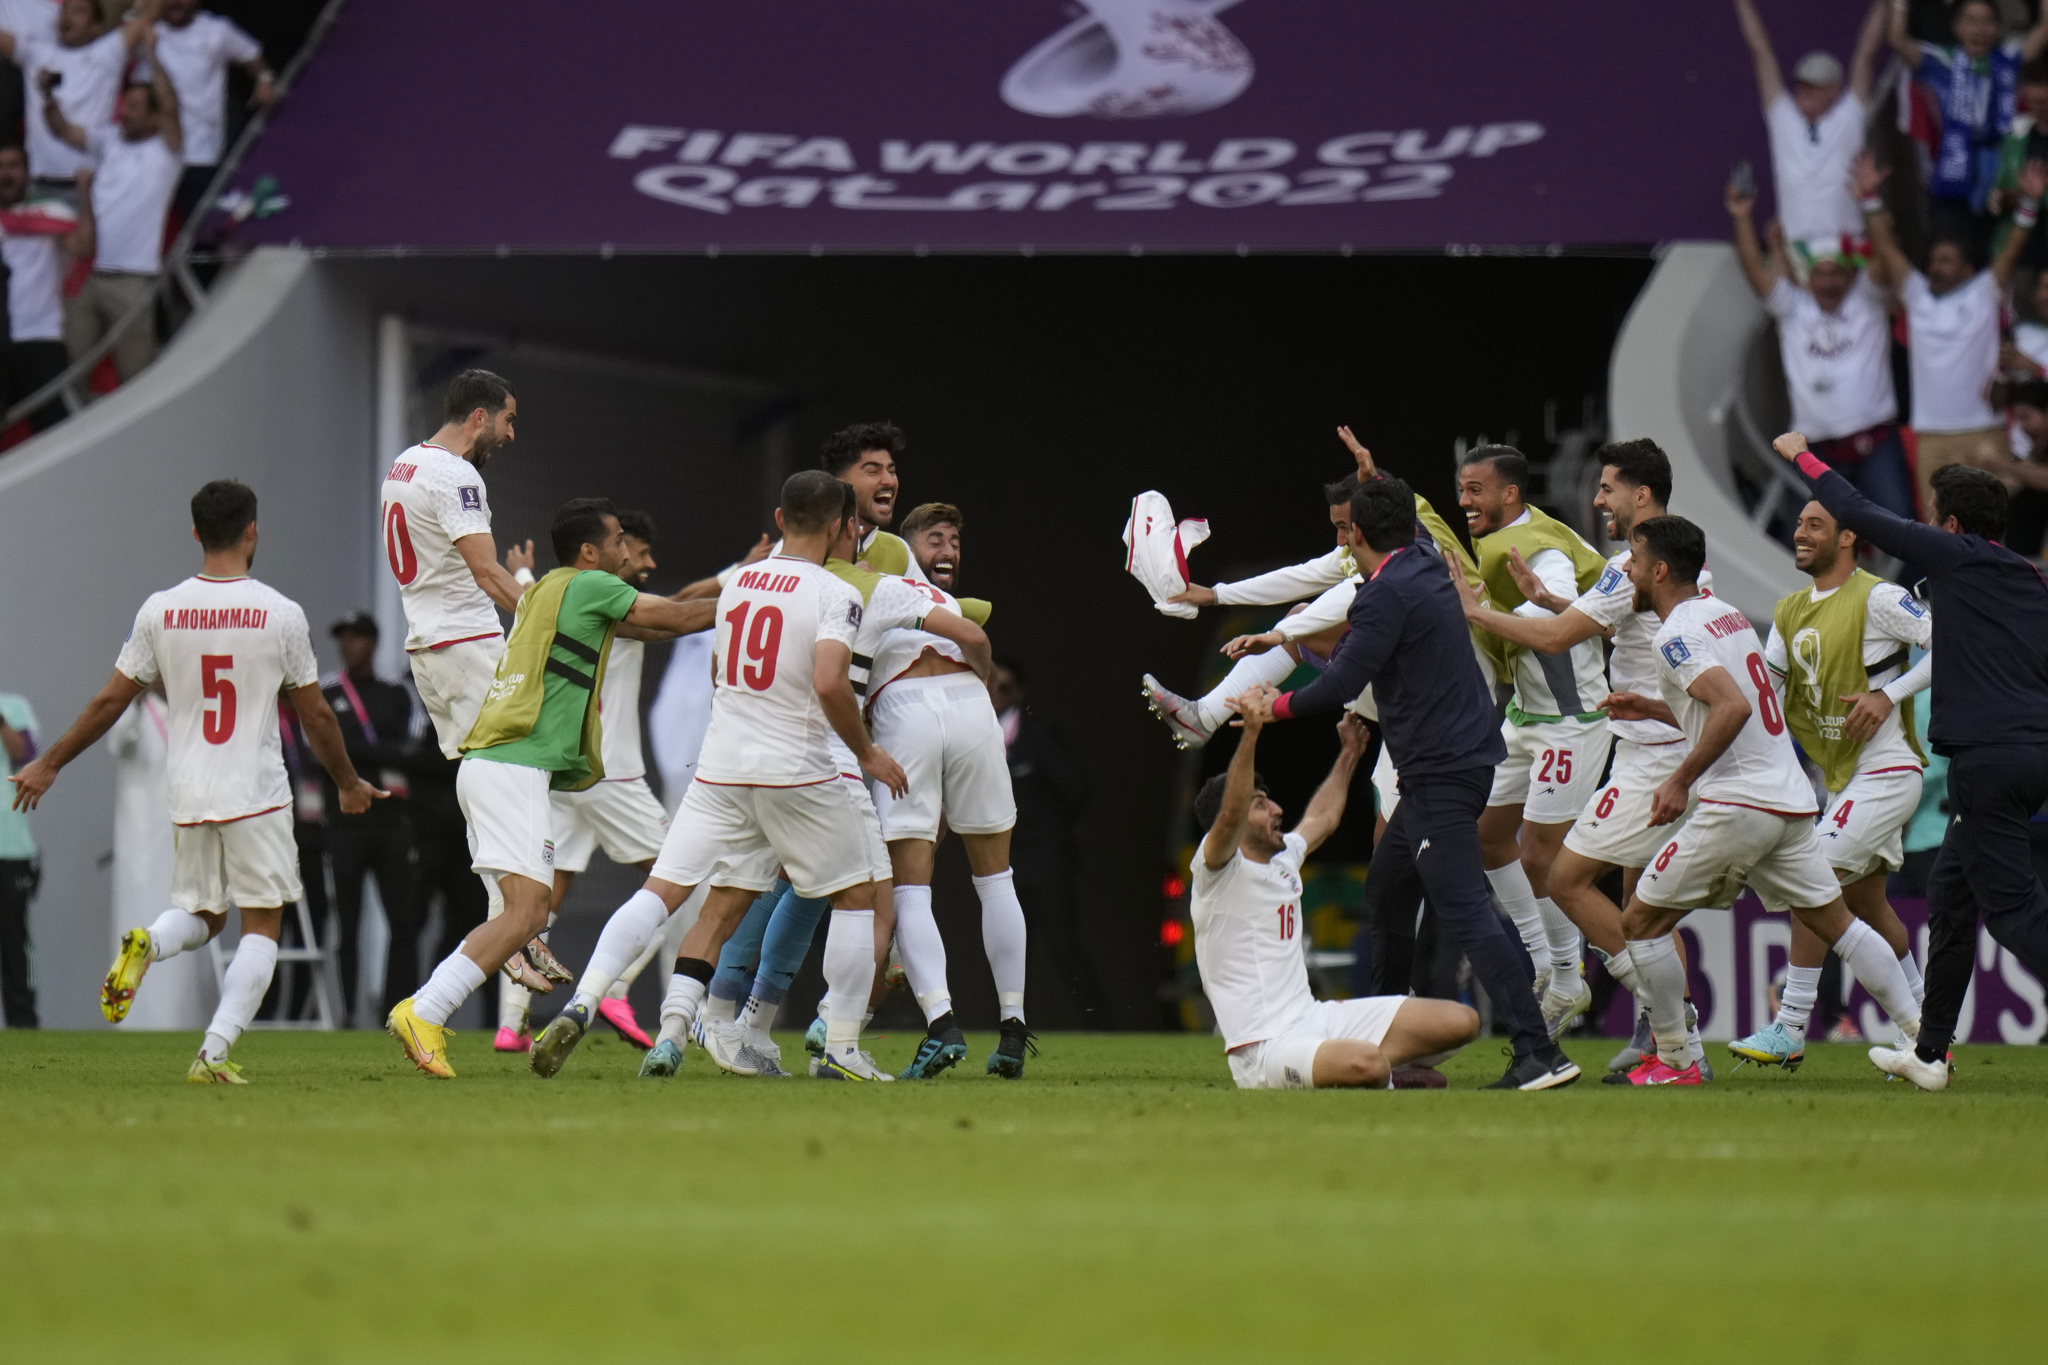 Players of team  lt;HIT gt;Iran lt;/HIT gt; celebrate after their win in the  lt;HIT gt;World lt;/HIT gt;  lt;HIT gt;Cup lt;/HIT gt; group B soccer match between Wales and  lt;HIT gt;Iran lt;/HIT gt;, at the Ahmad Bin Ali Stadium in Al Rayyan , Qatar, Friday, Nov. 25, 2022. (AP Photo/Alessandra Tarantino)